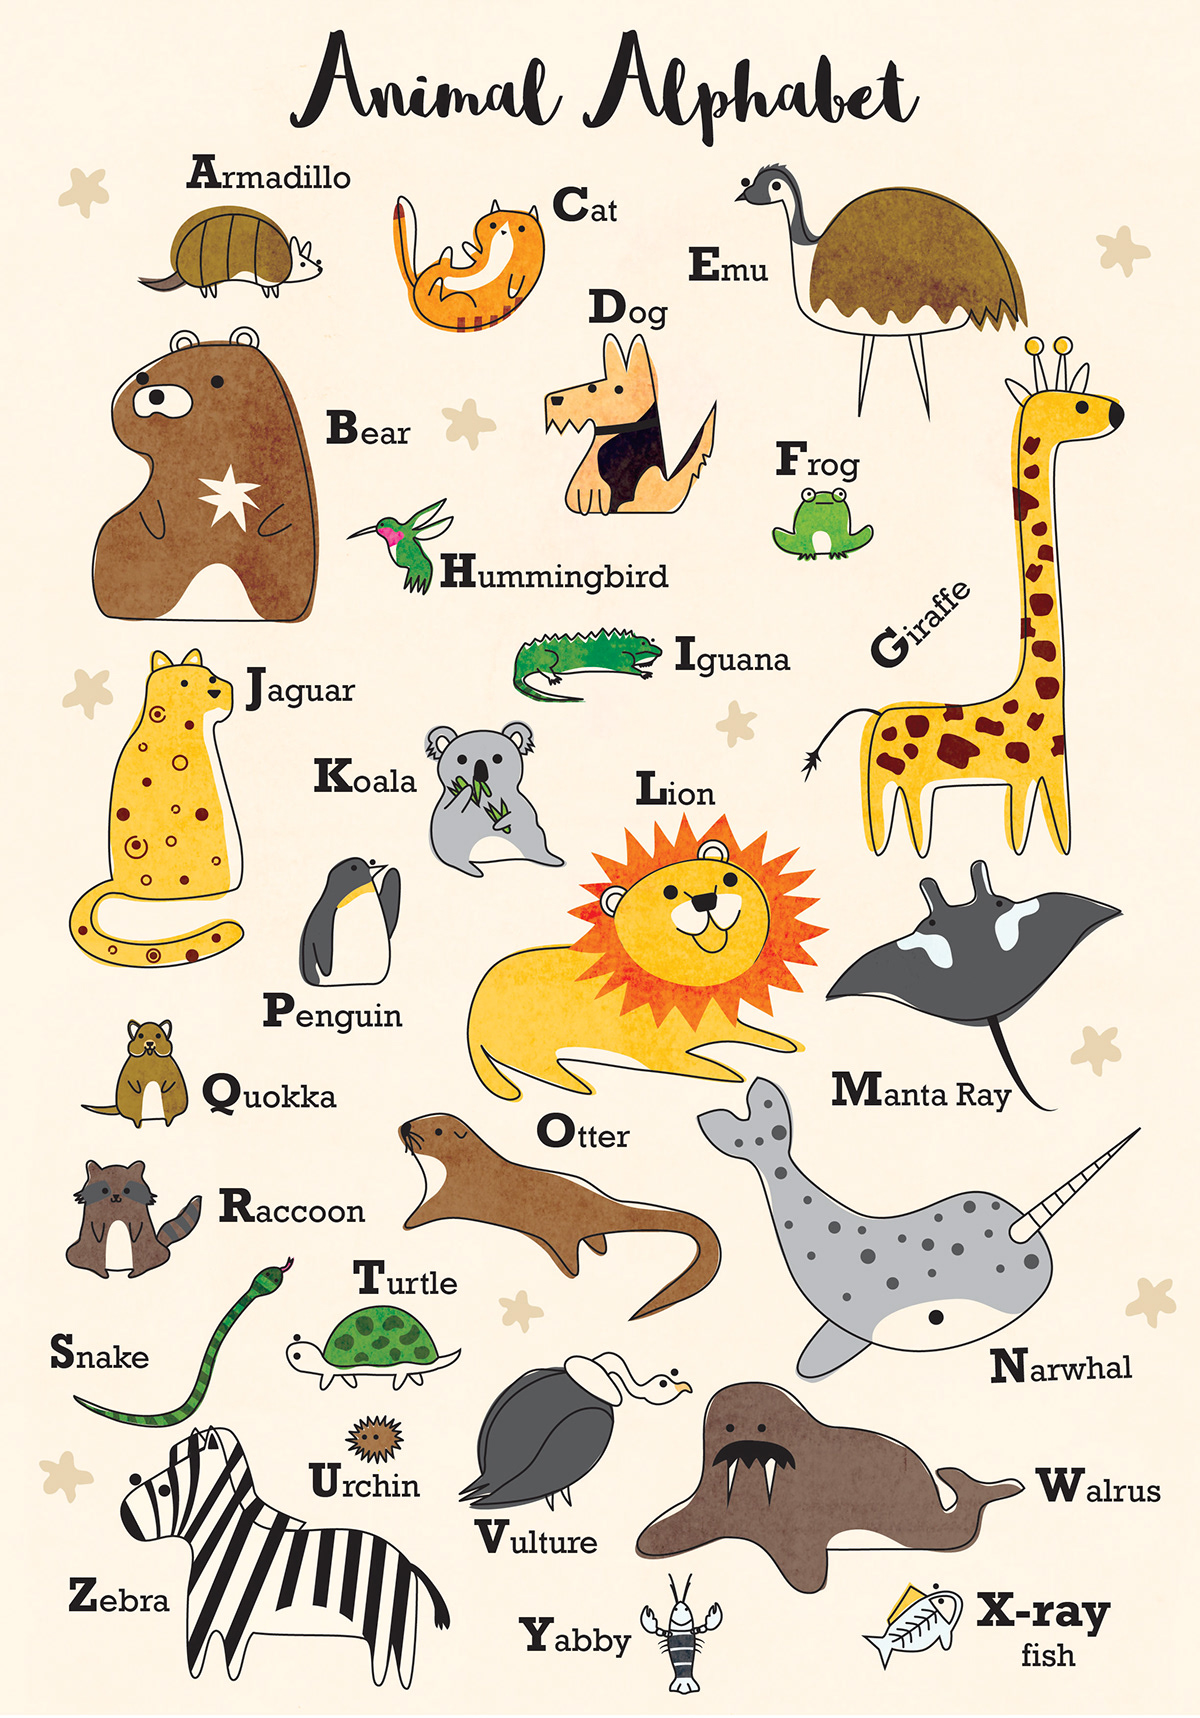 Animal Alphabet Chart for Children on Behance